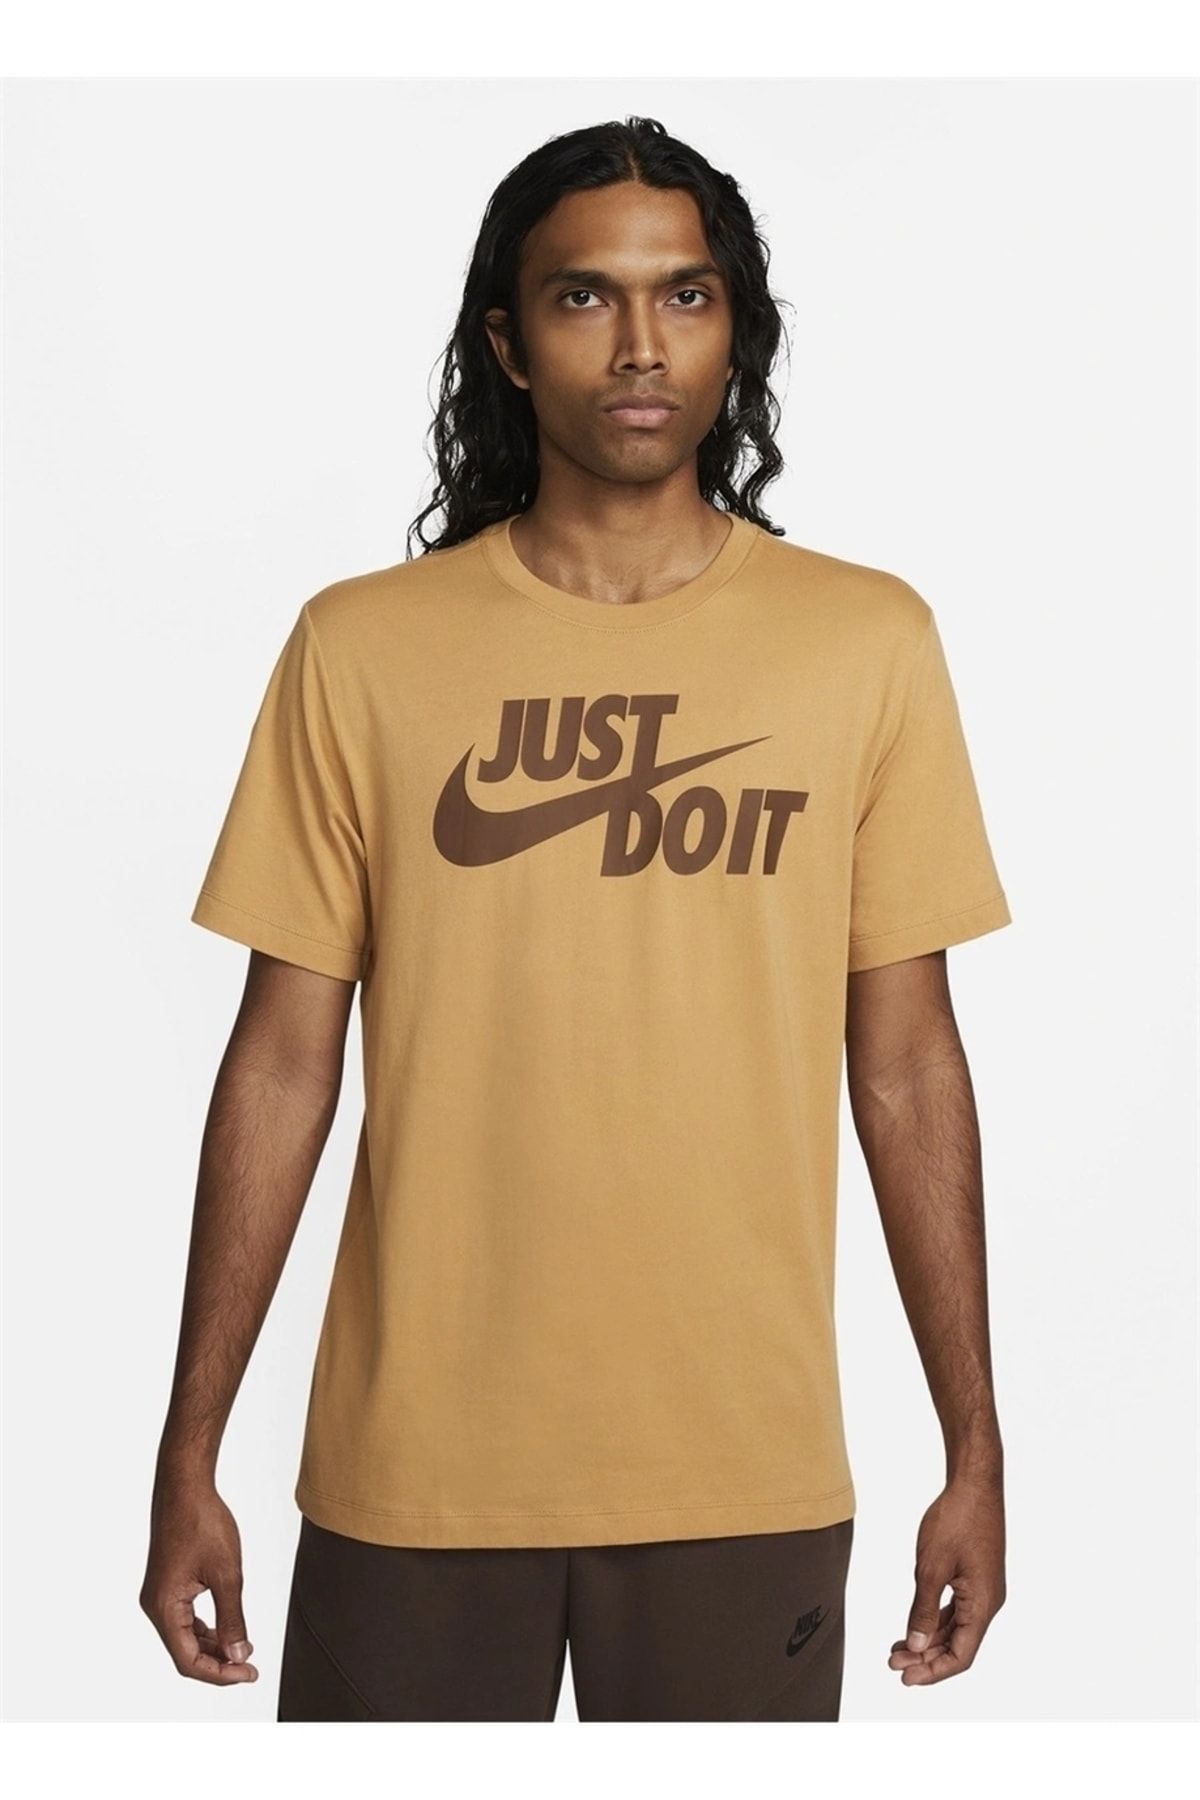 Nike Bisiklet Yaka Baskılı Sarı - Altın Erkek T-shirt Ar5006-722 M Tee Just Do It Swoosh